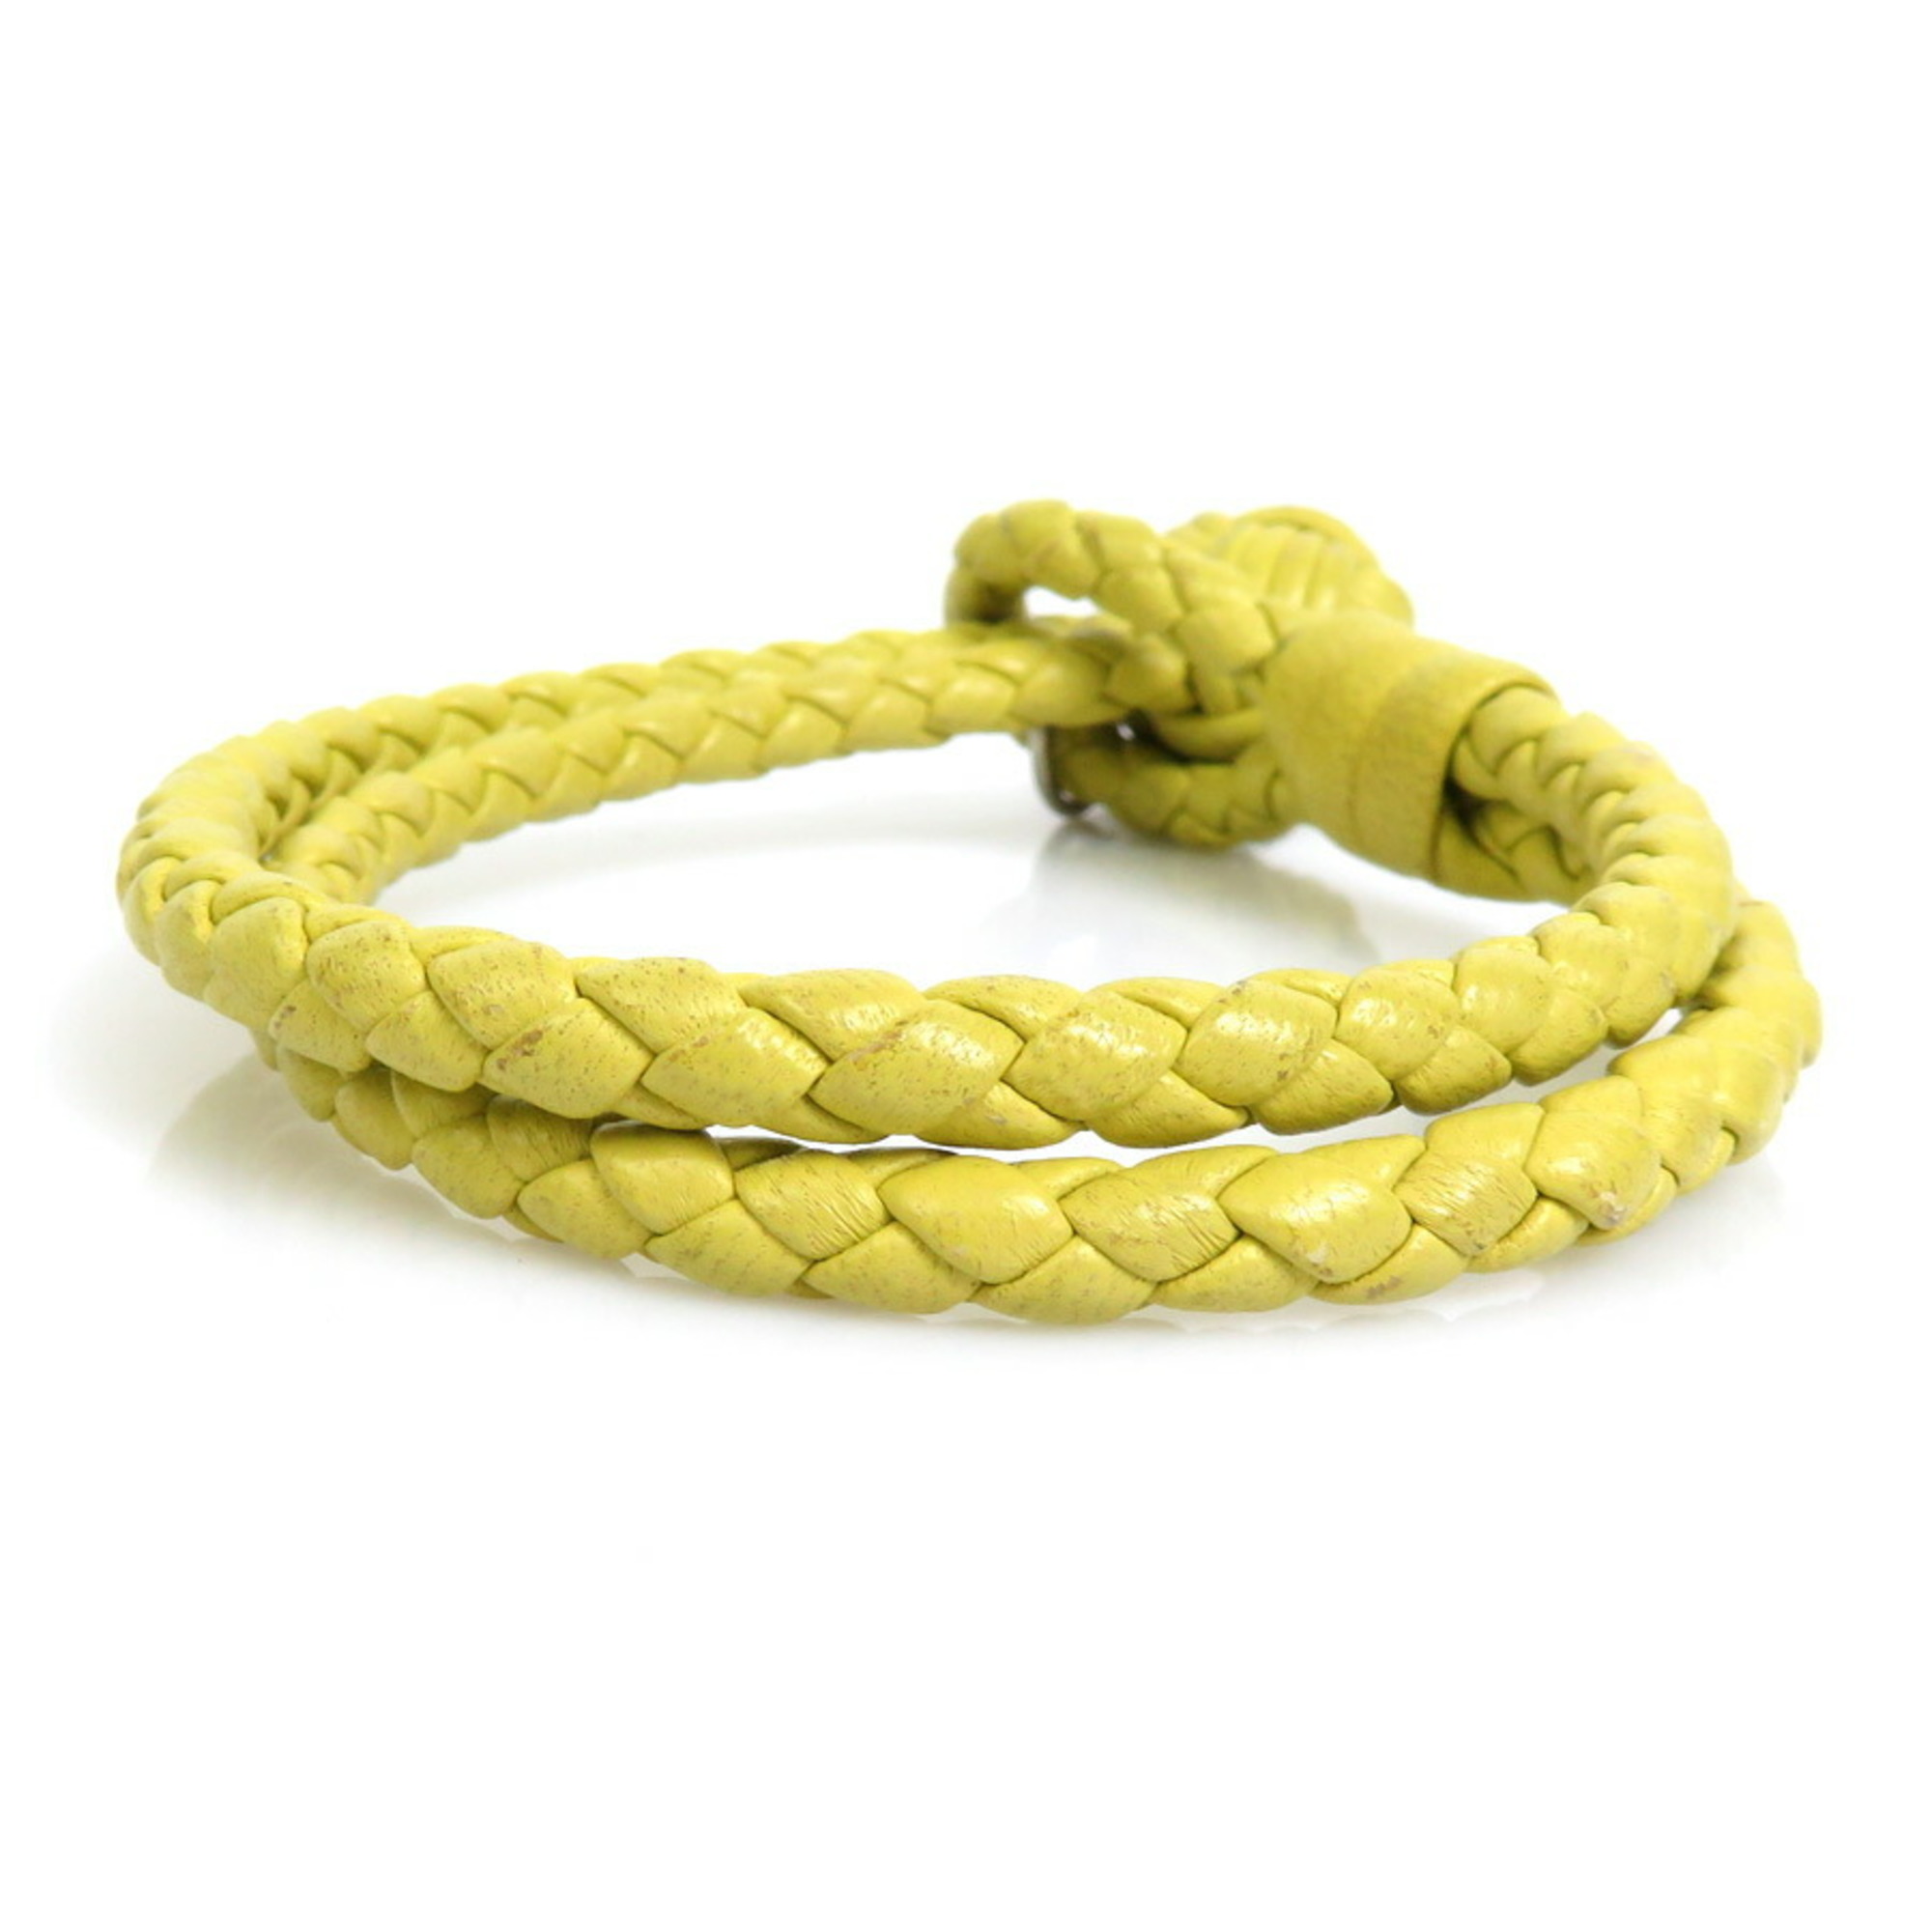 BOTTEGA VENETA Bracelet Intrecciato Leather/Metal Yellow/Silver Unisex